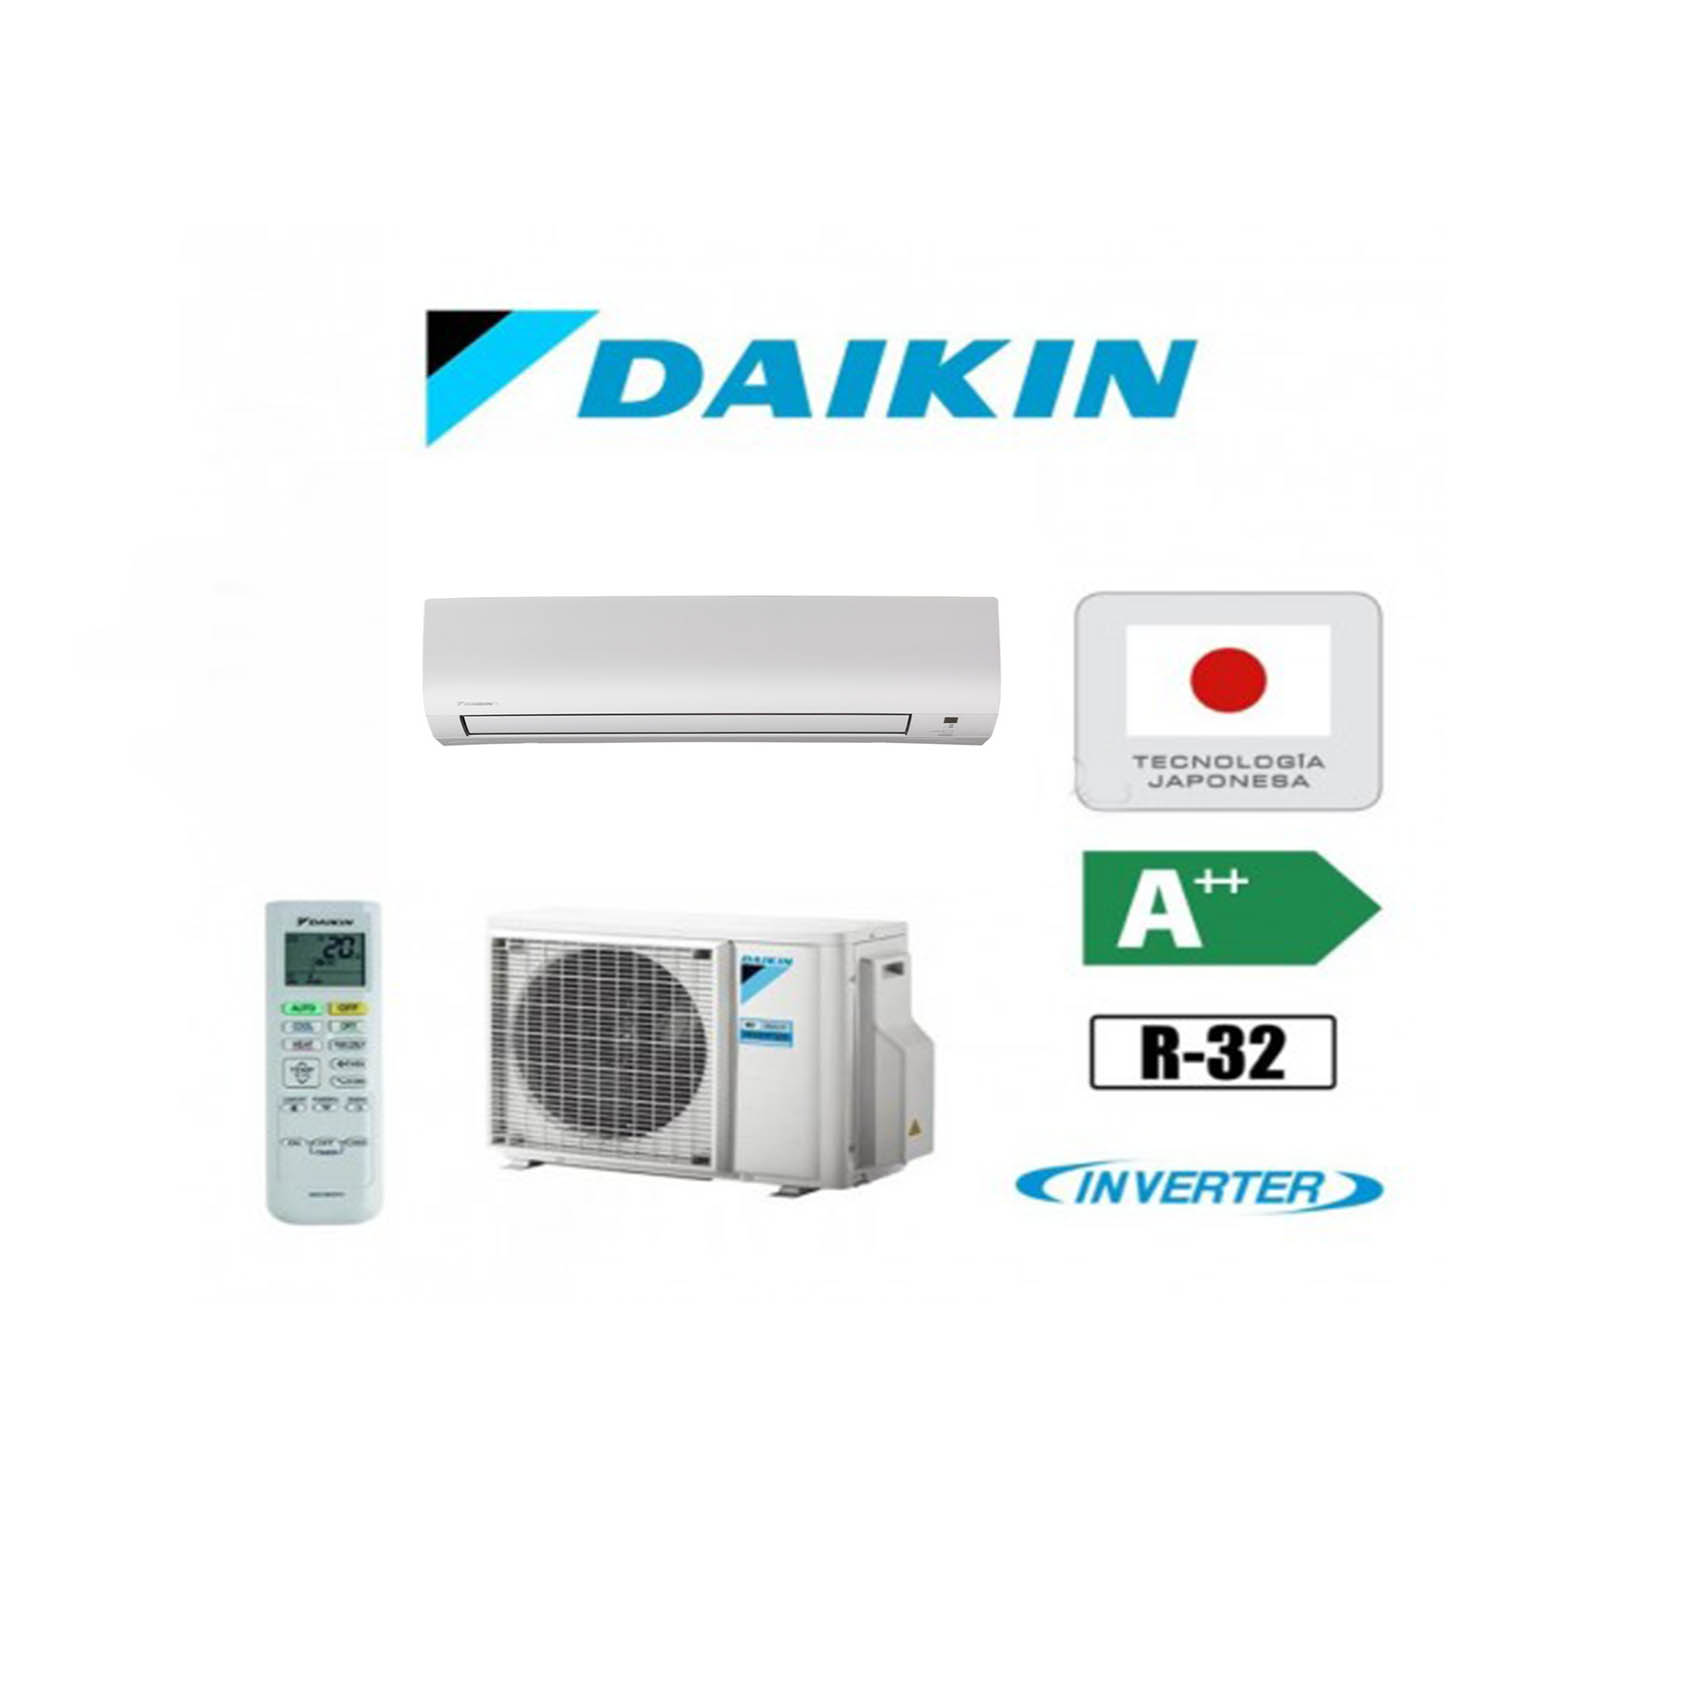 Aire acondicionado Split de la marca Daikin y modelo TXP35M con tecnologia Inverter y gas R22 con A++ eficiencia energetica